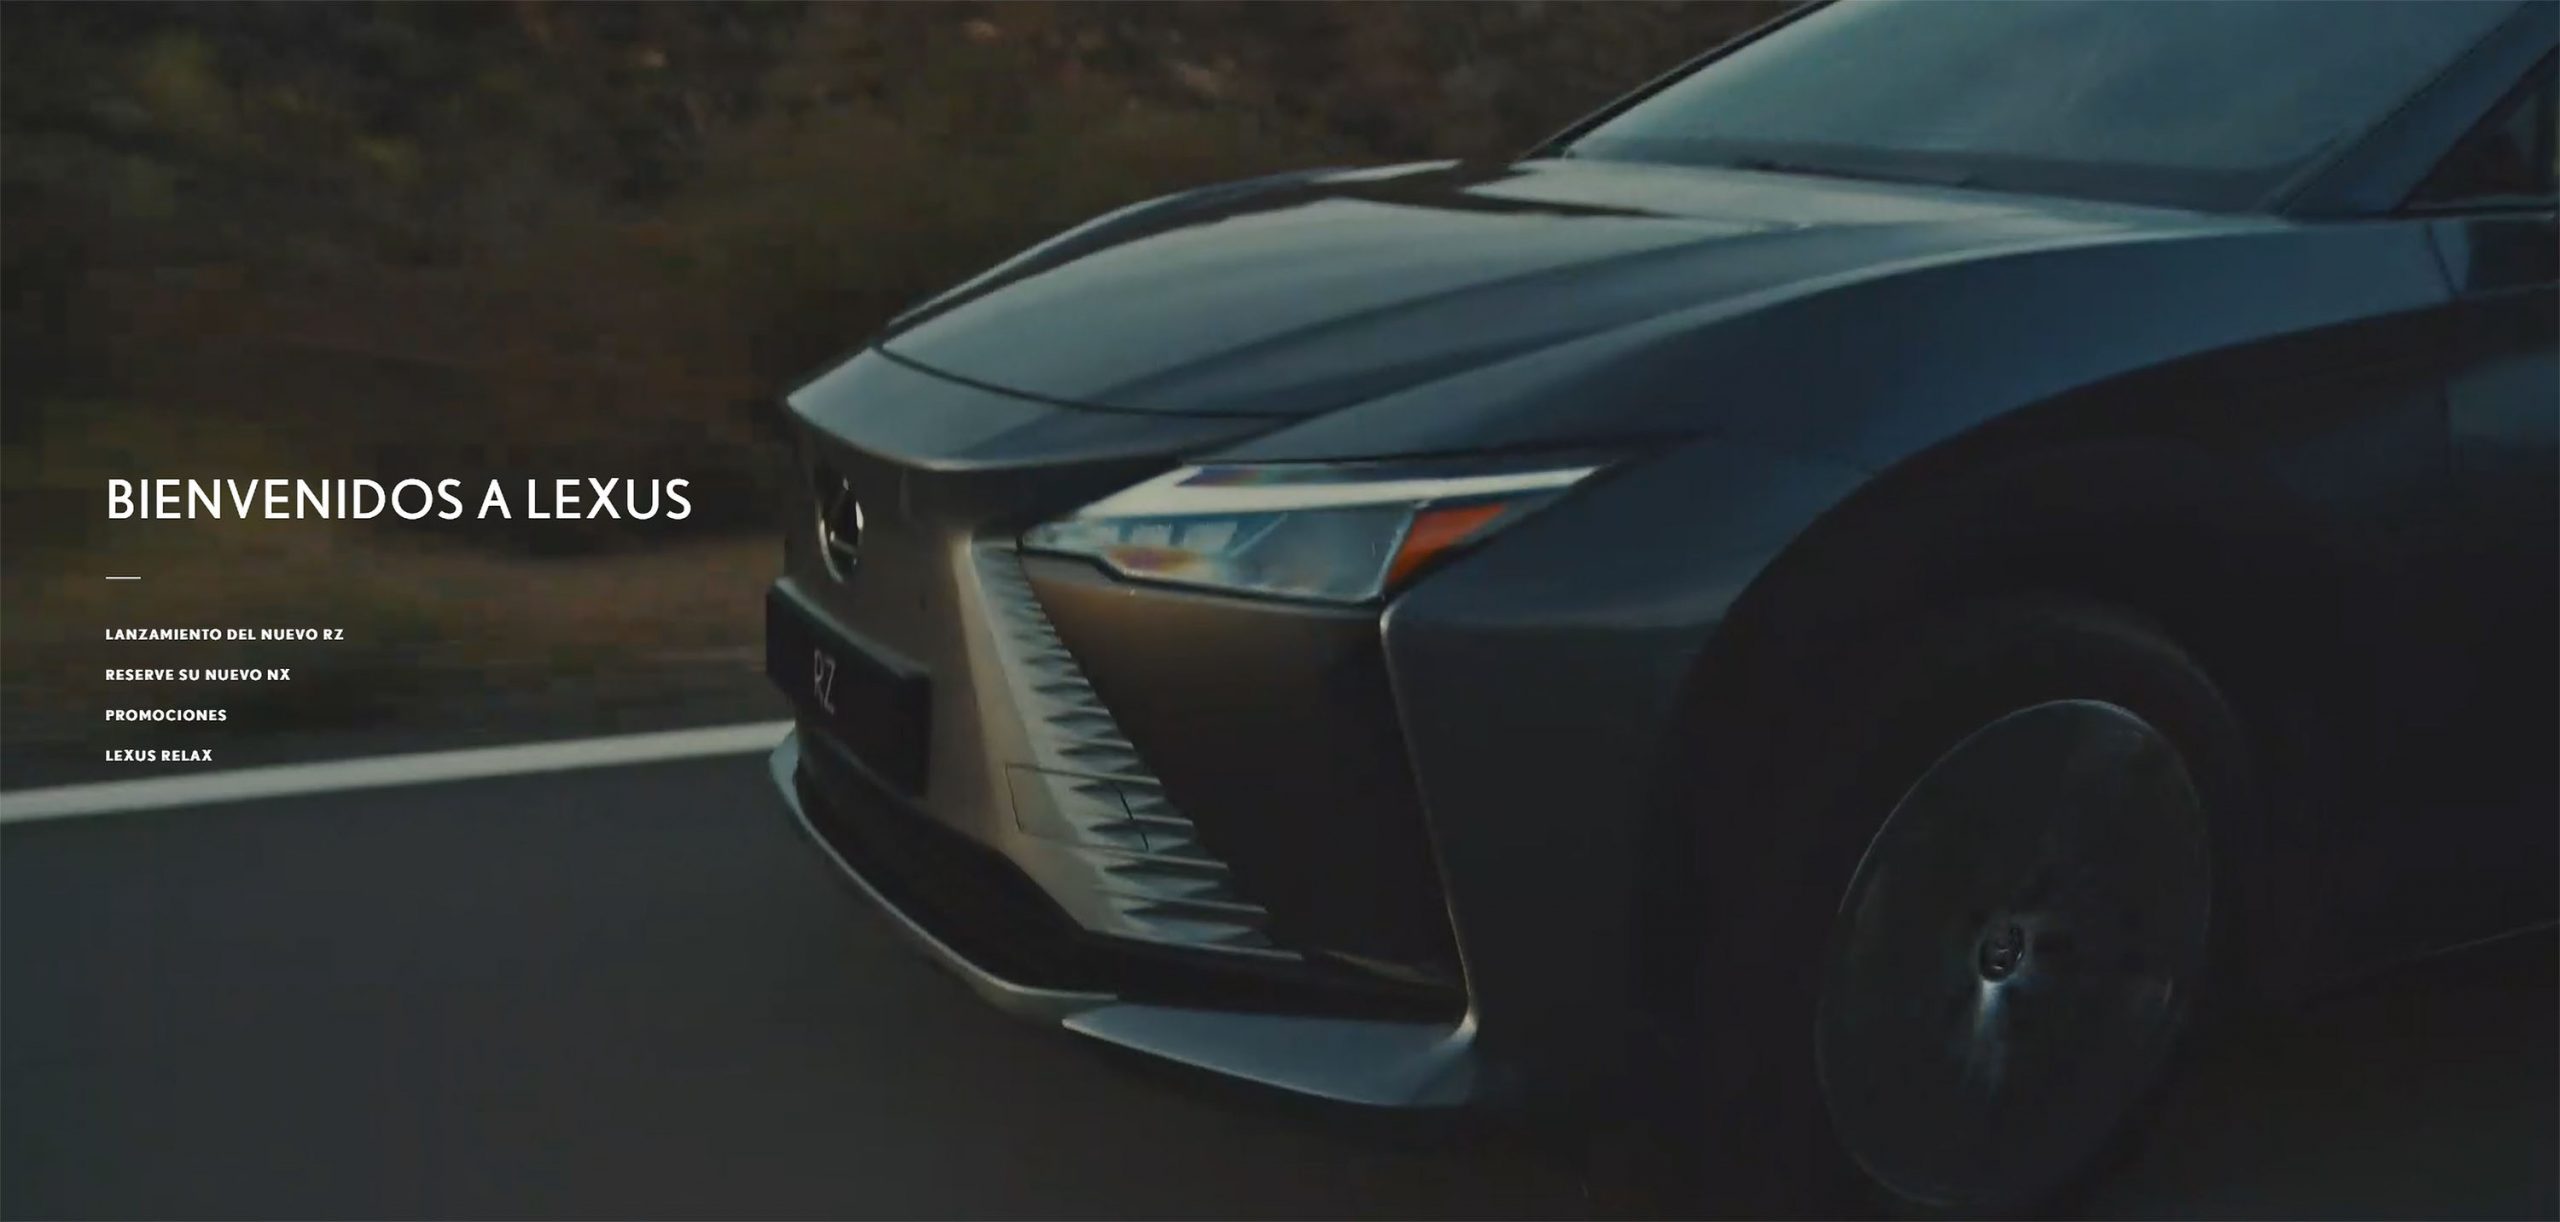 Galería: Lexus Presenta su Innovadora Nueva Web